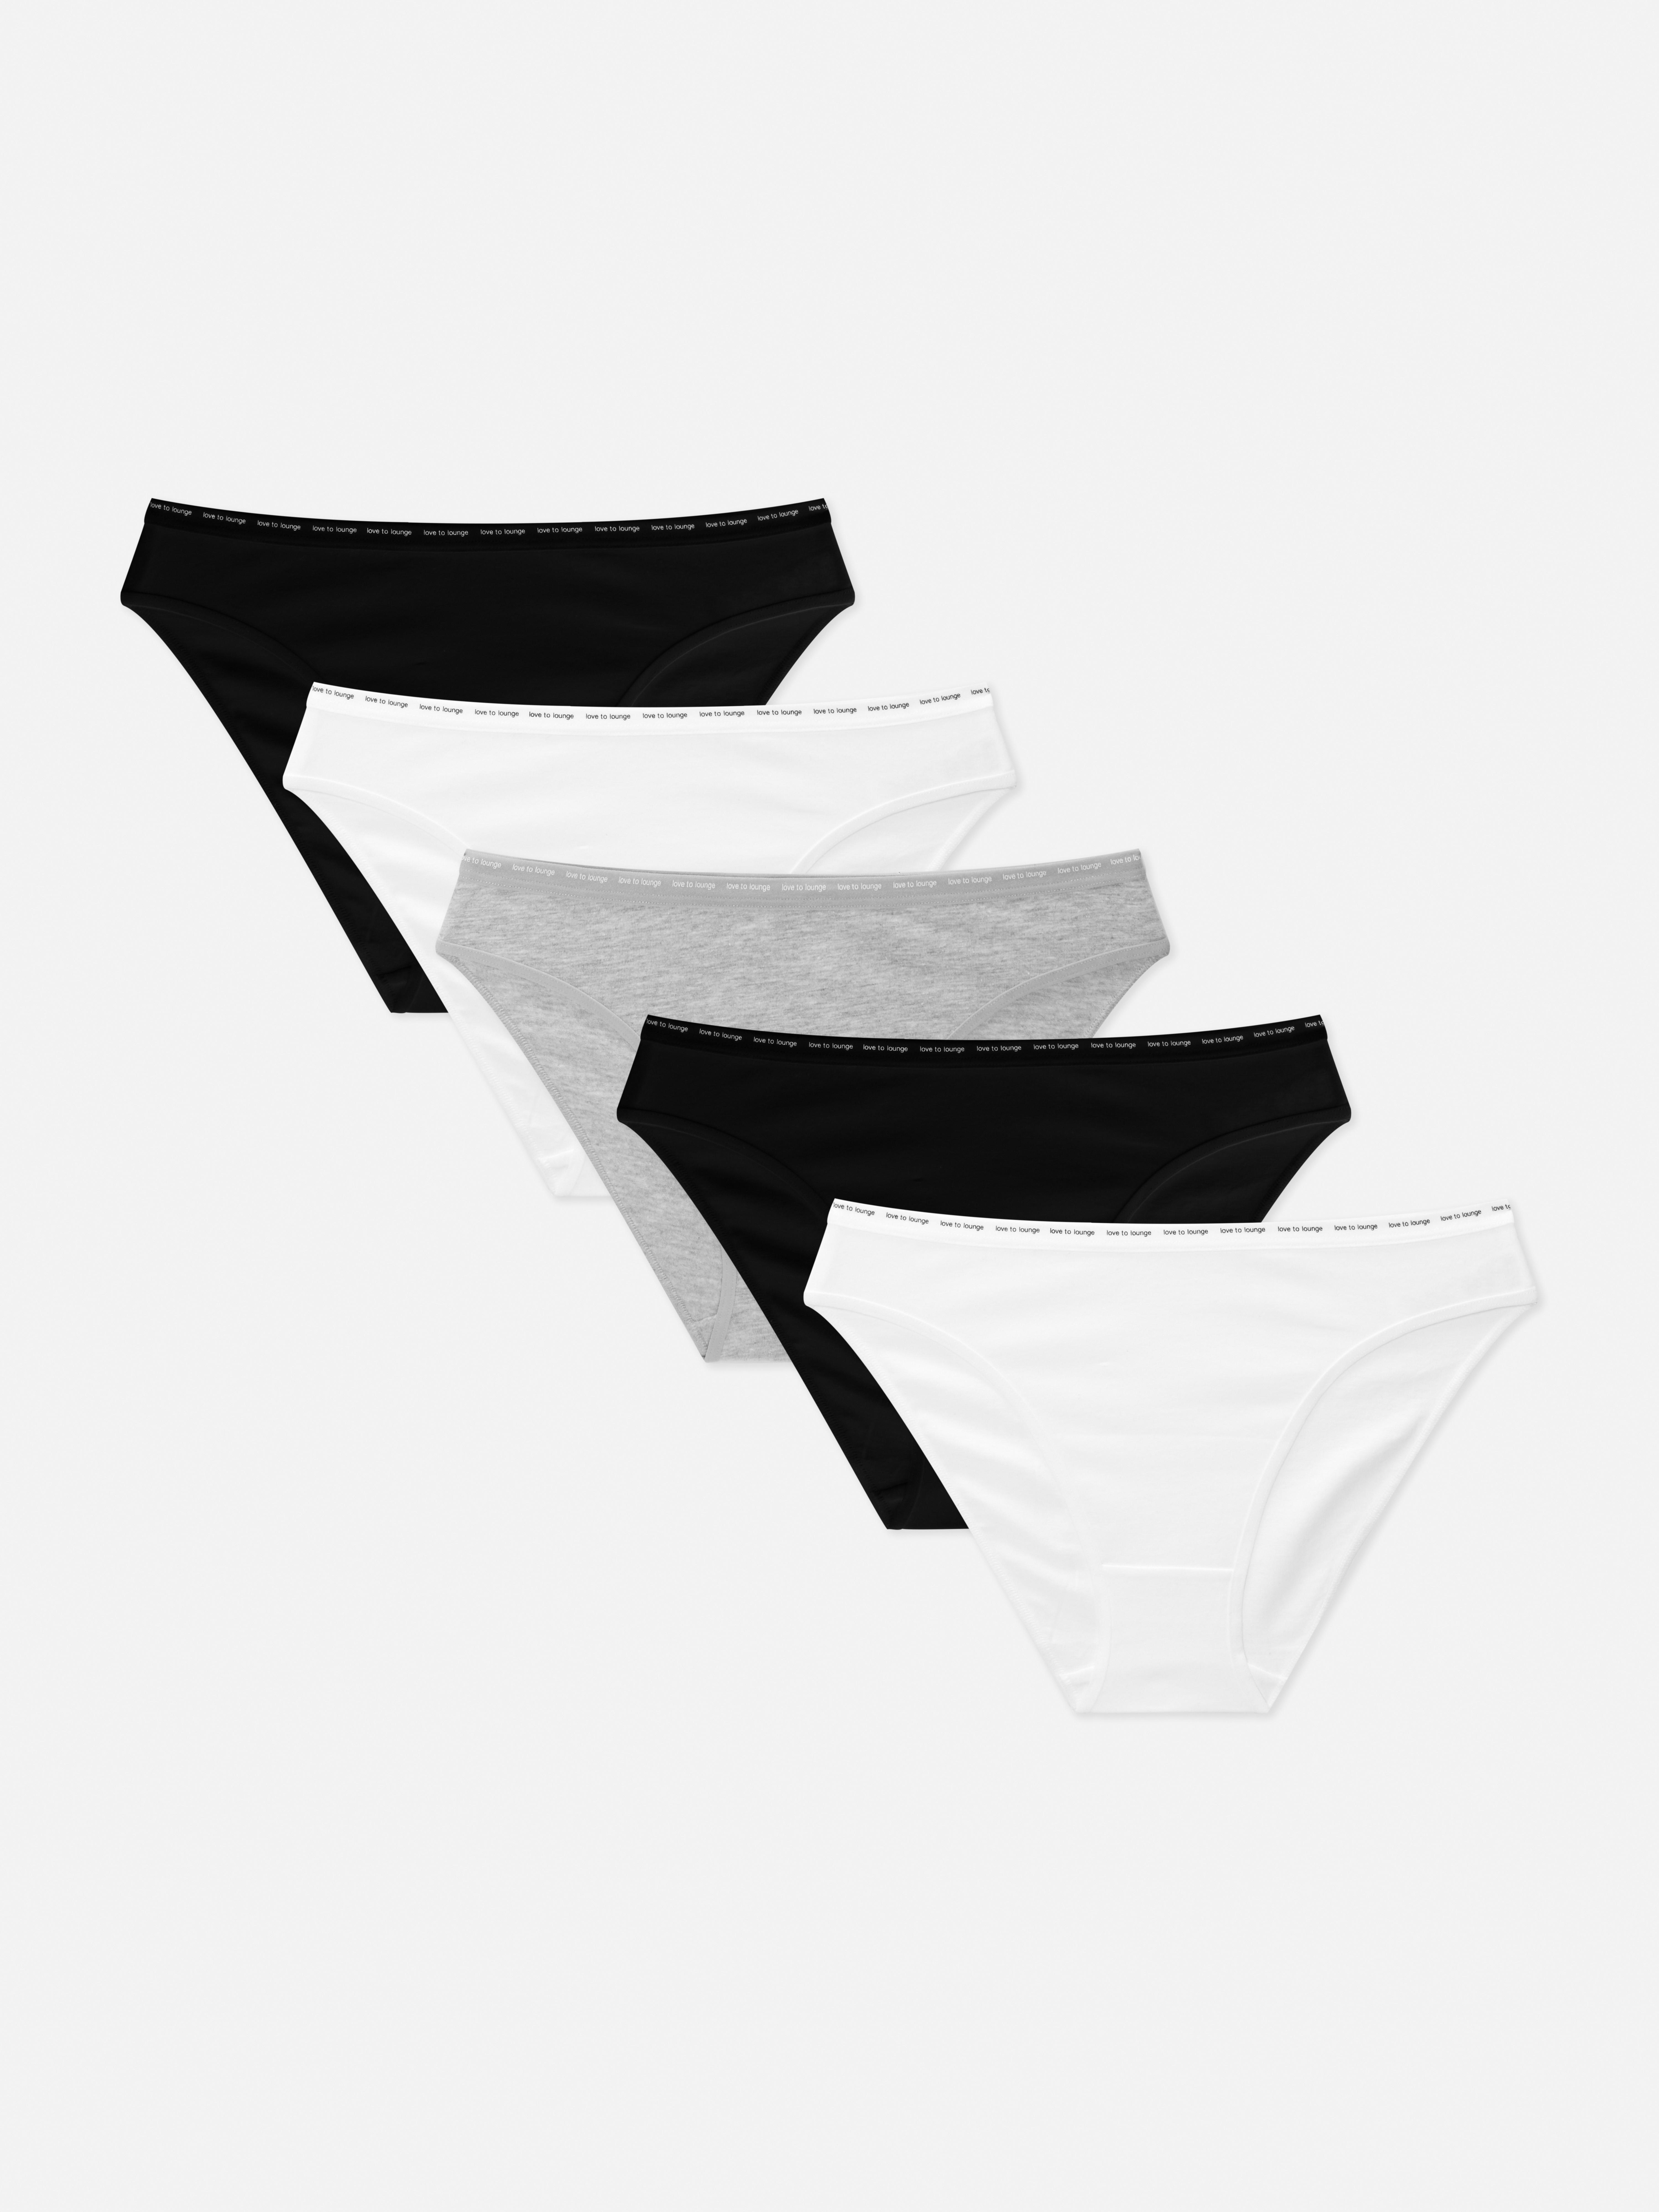 Mini Knickers Panties 4 Pack Women's Ladies Black or White Brand New Primark